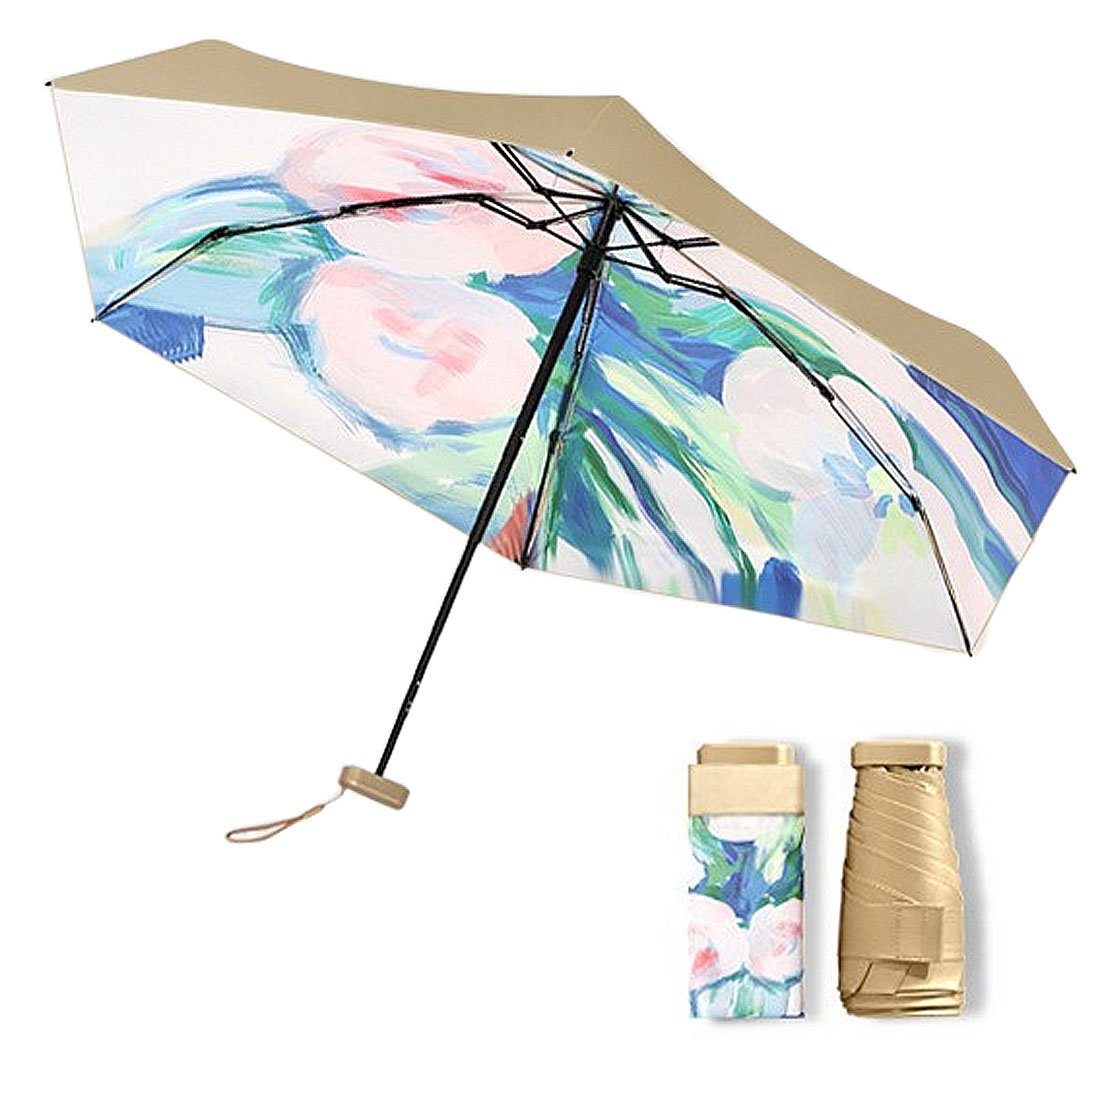 Klappschirm, Regenschirm, winddicht Taschenregenschirm UV-Ölmalerei regenfest, DÖRÖY tragbarer